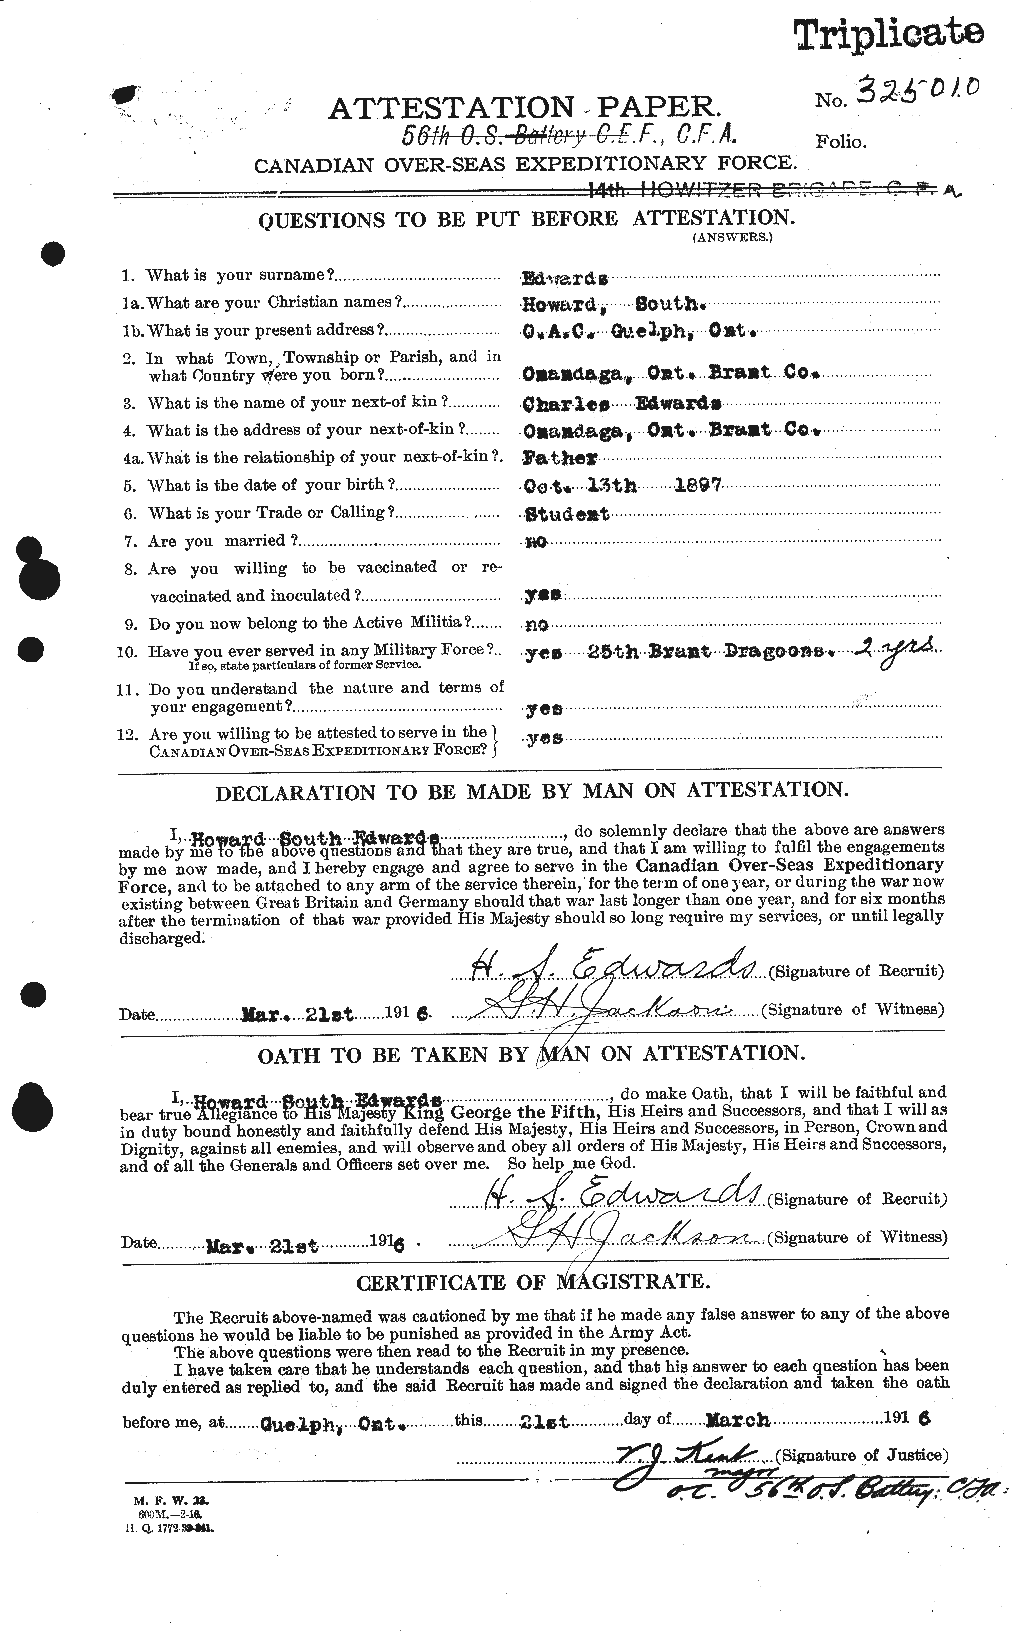 Dossiers du Personnel de la Première Guerre mondiale - CEC 309791a